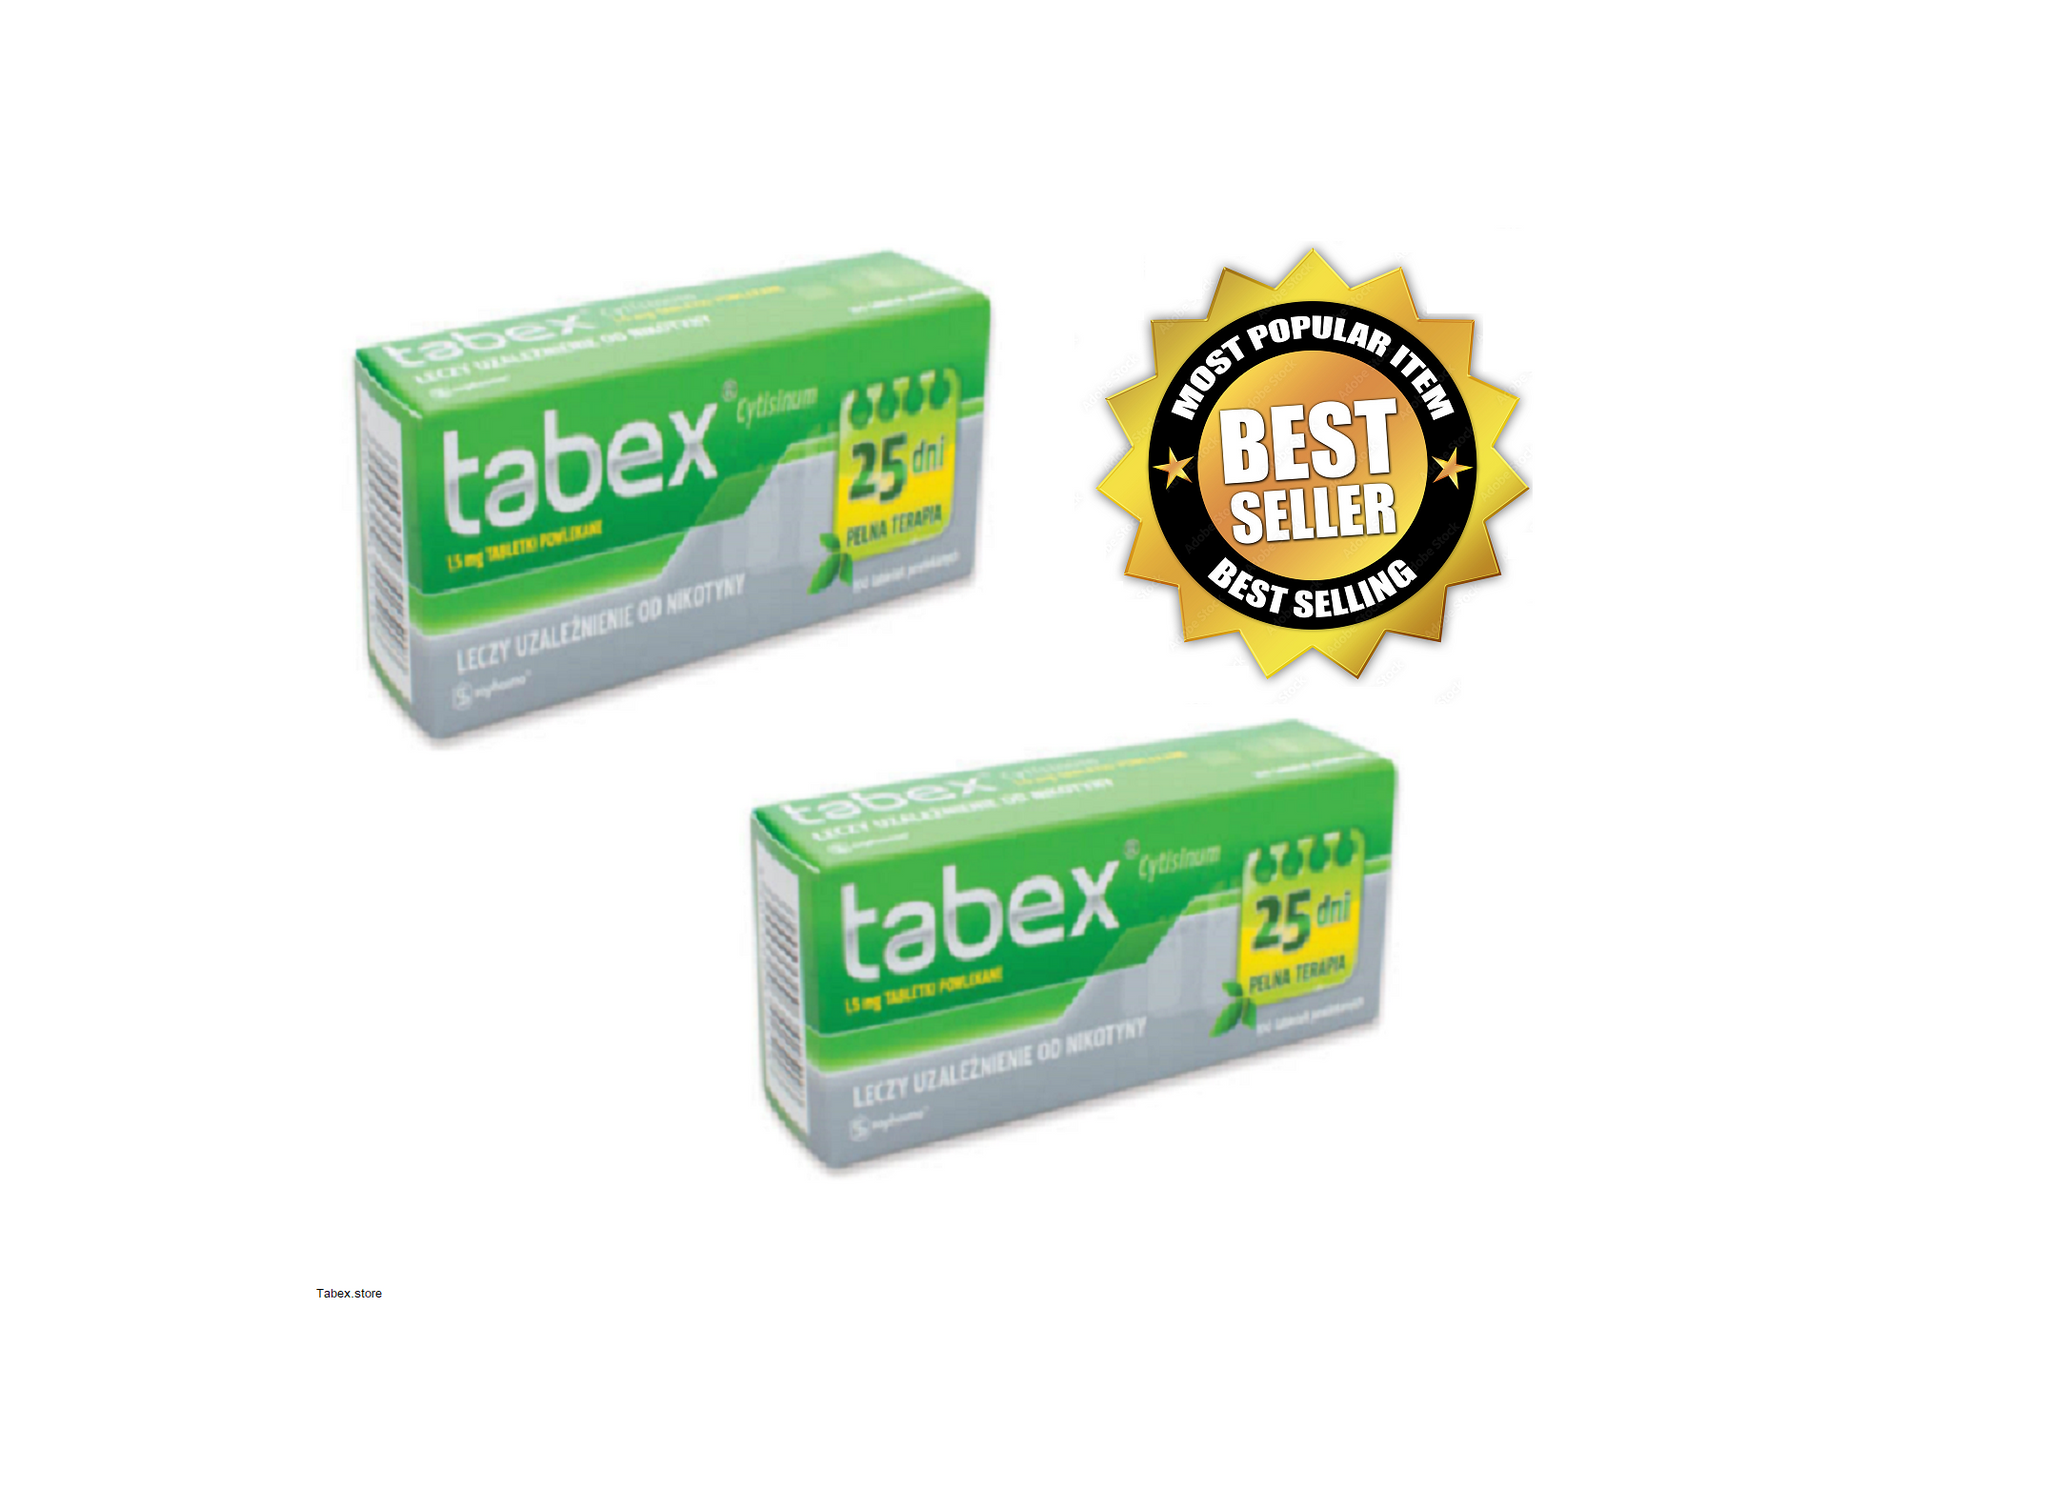 Tablettes de nettoyage x20 comprimés NIC IMPEX